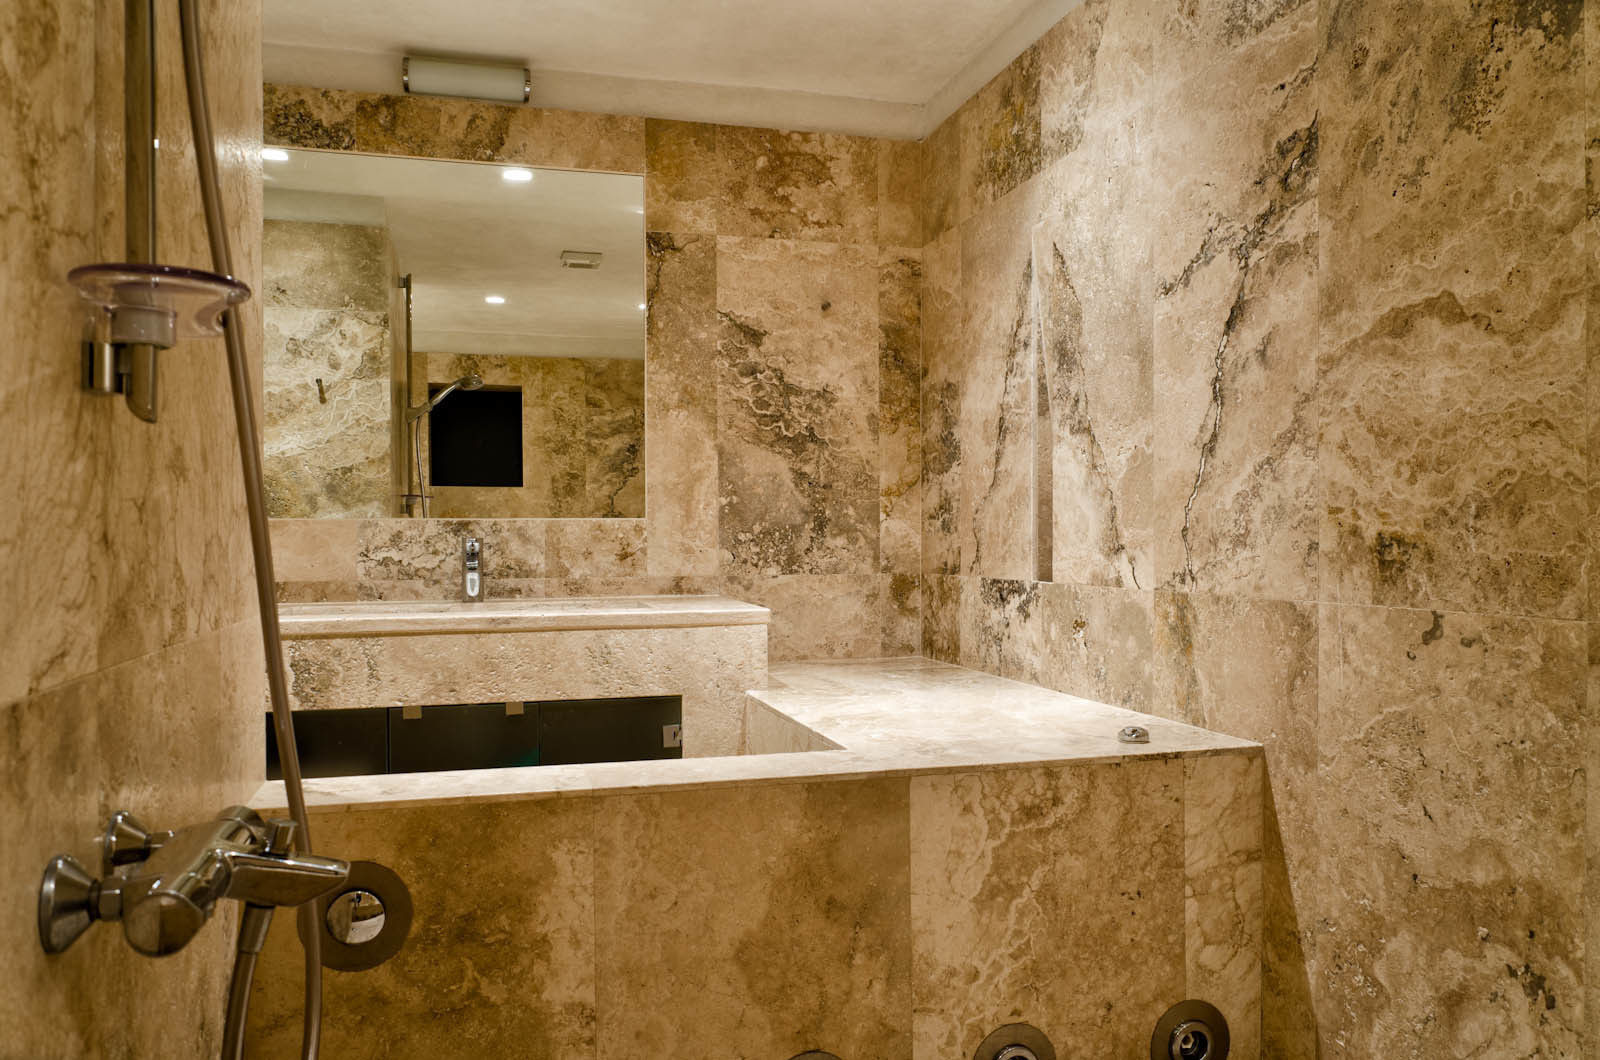 Bagno in Pietra di Rapolano Pietre di Rapolano Bagno in stile classico Pietra pavimento del bagno,bagno,pavimento in marmo,rivestimenti